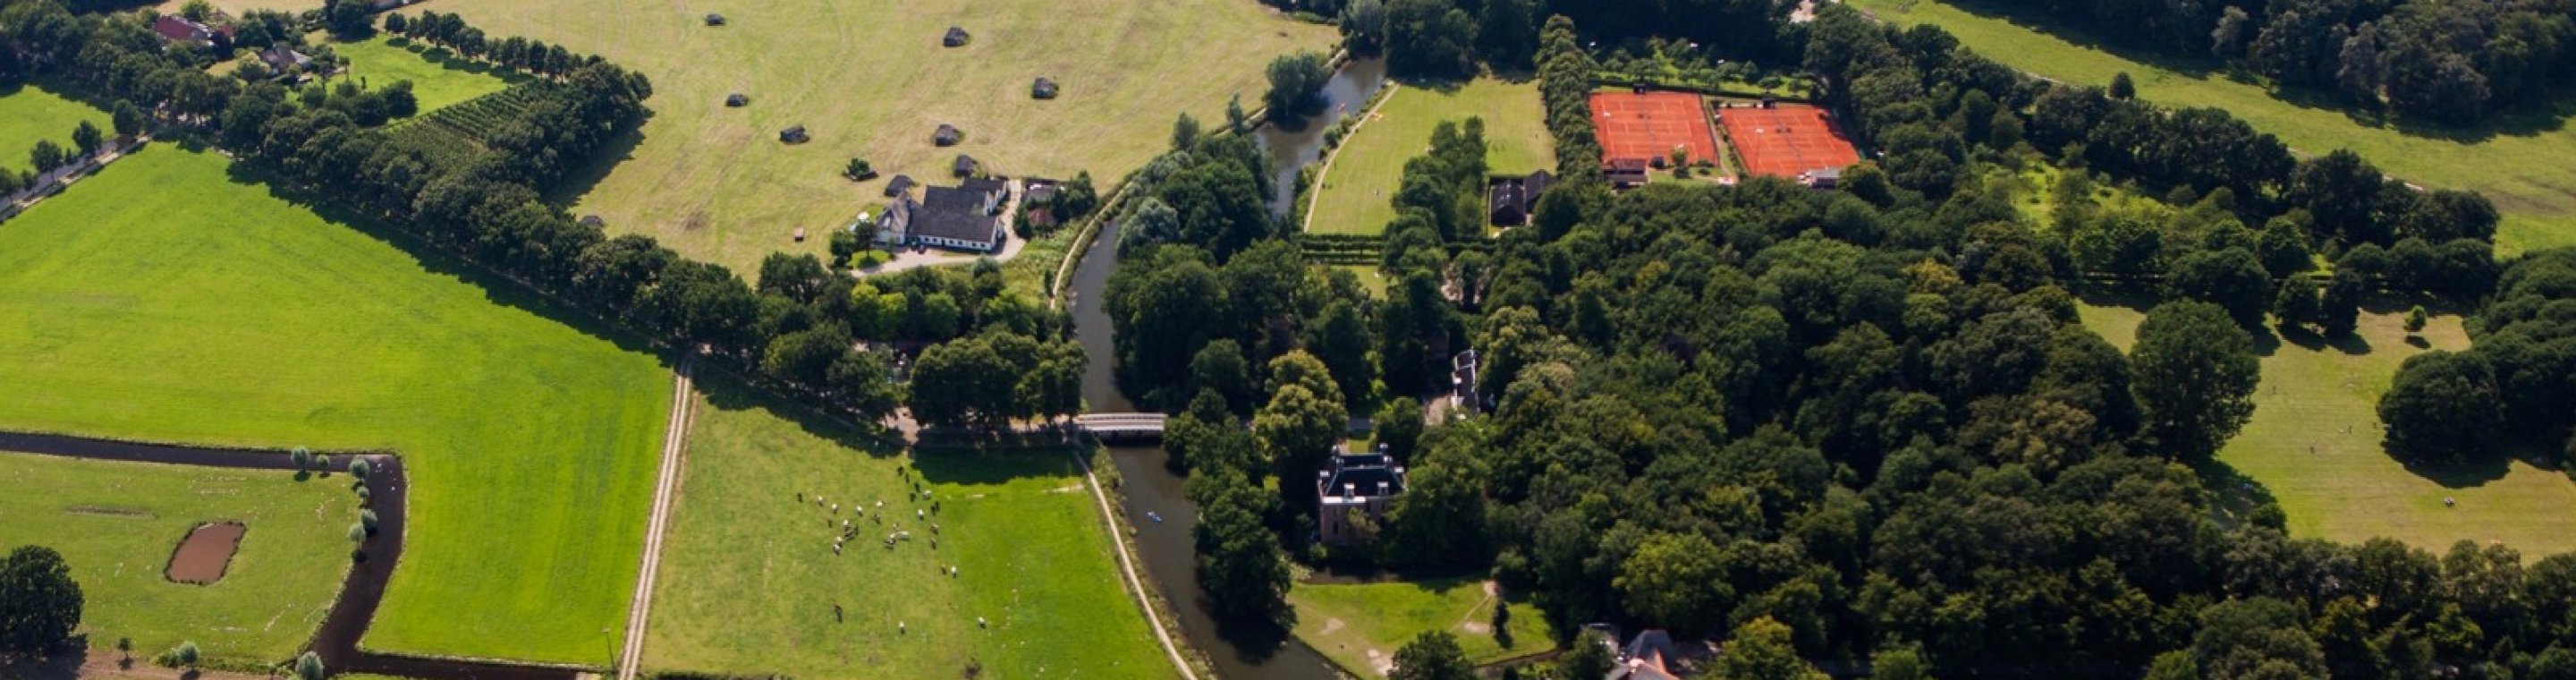 Luchtfoto van een landelijk gebied in Nederland